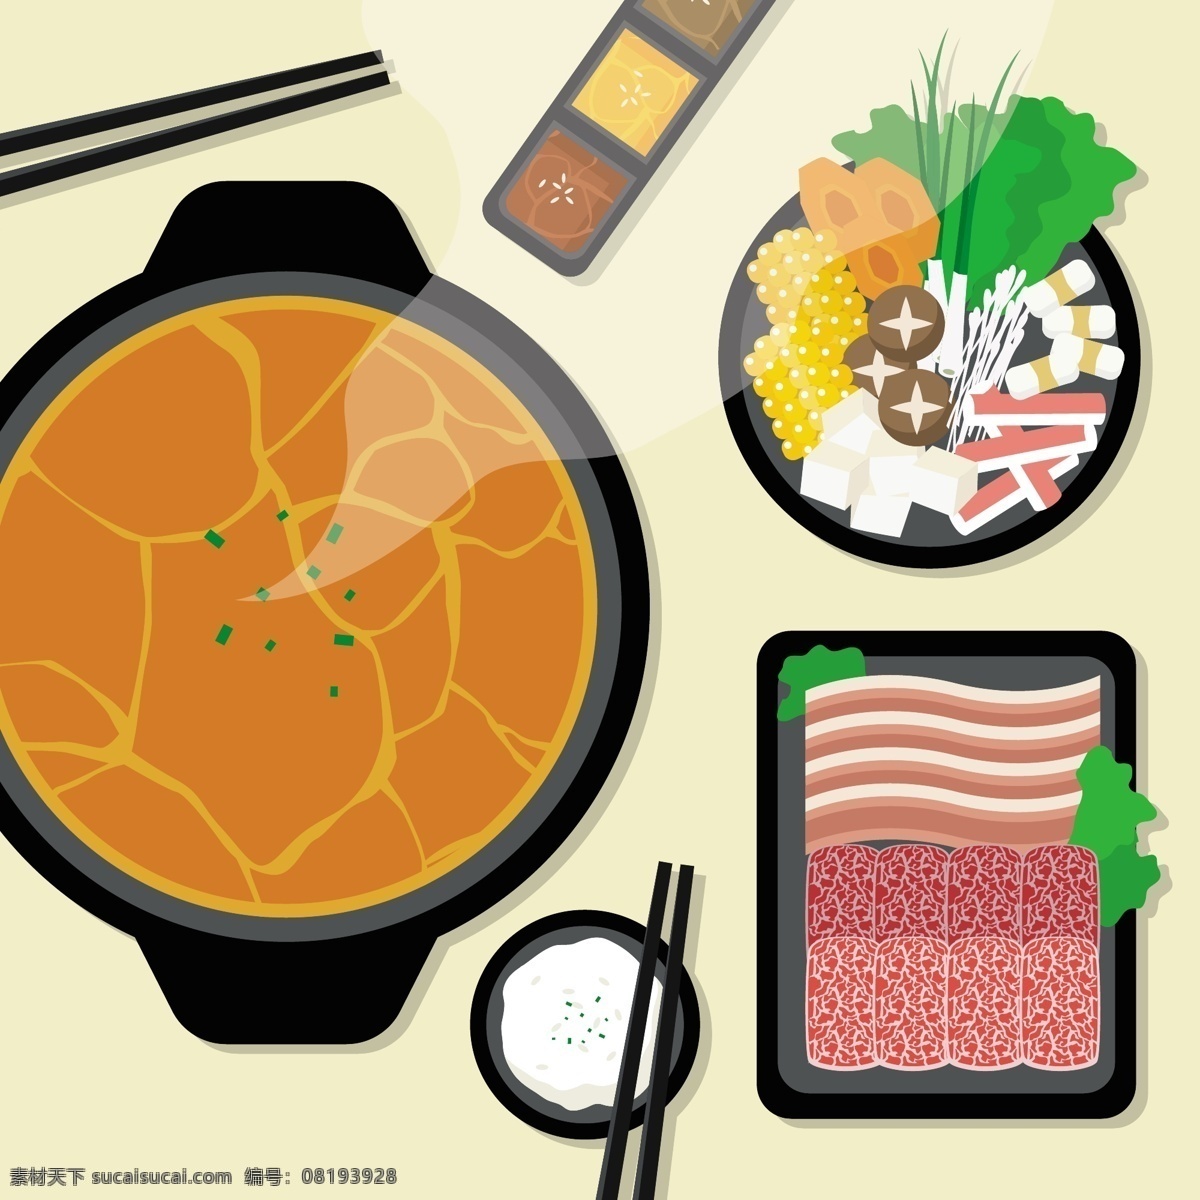 扁平化 火锅 食物 插画 扁平化食物 火锅食物 美食 蘑菇 肉 矢量素材 手绘 手绘食物 蔬菜